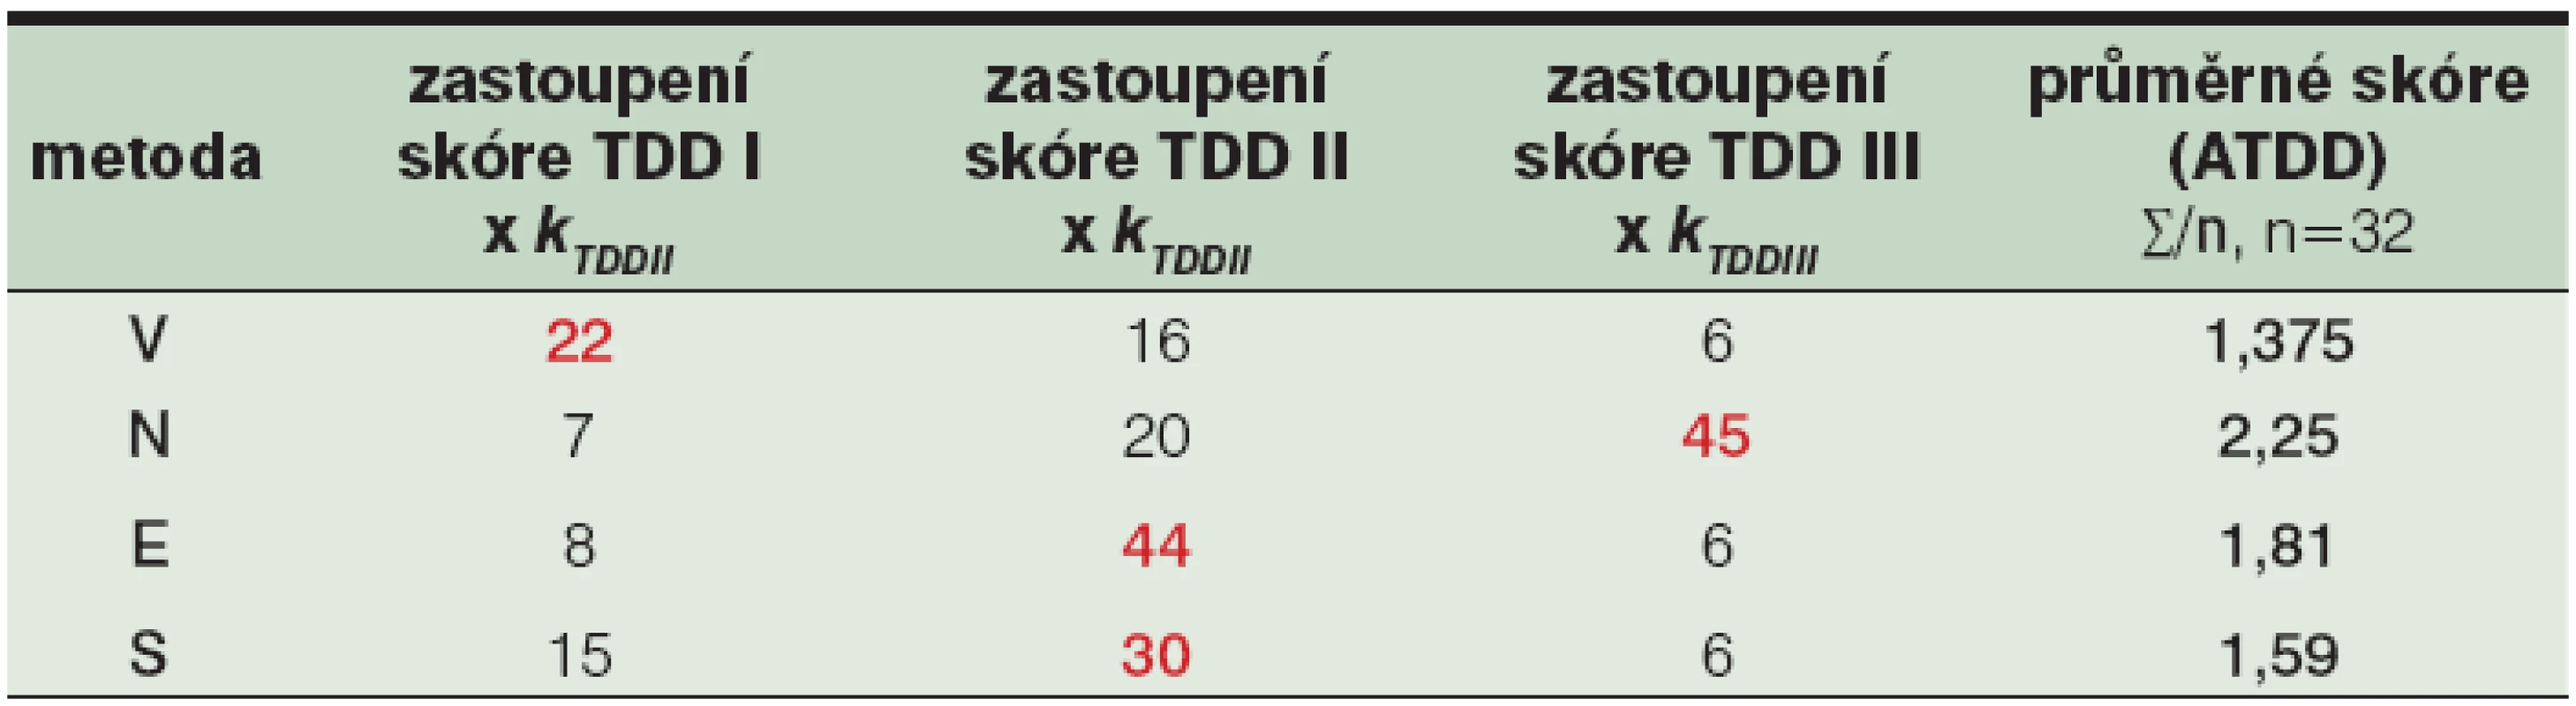 Průměrné skóre traumatizace tkáně<sup>1</sup> v jednotlivých skupinách débridementu</sup>2</sup>